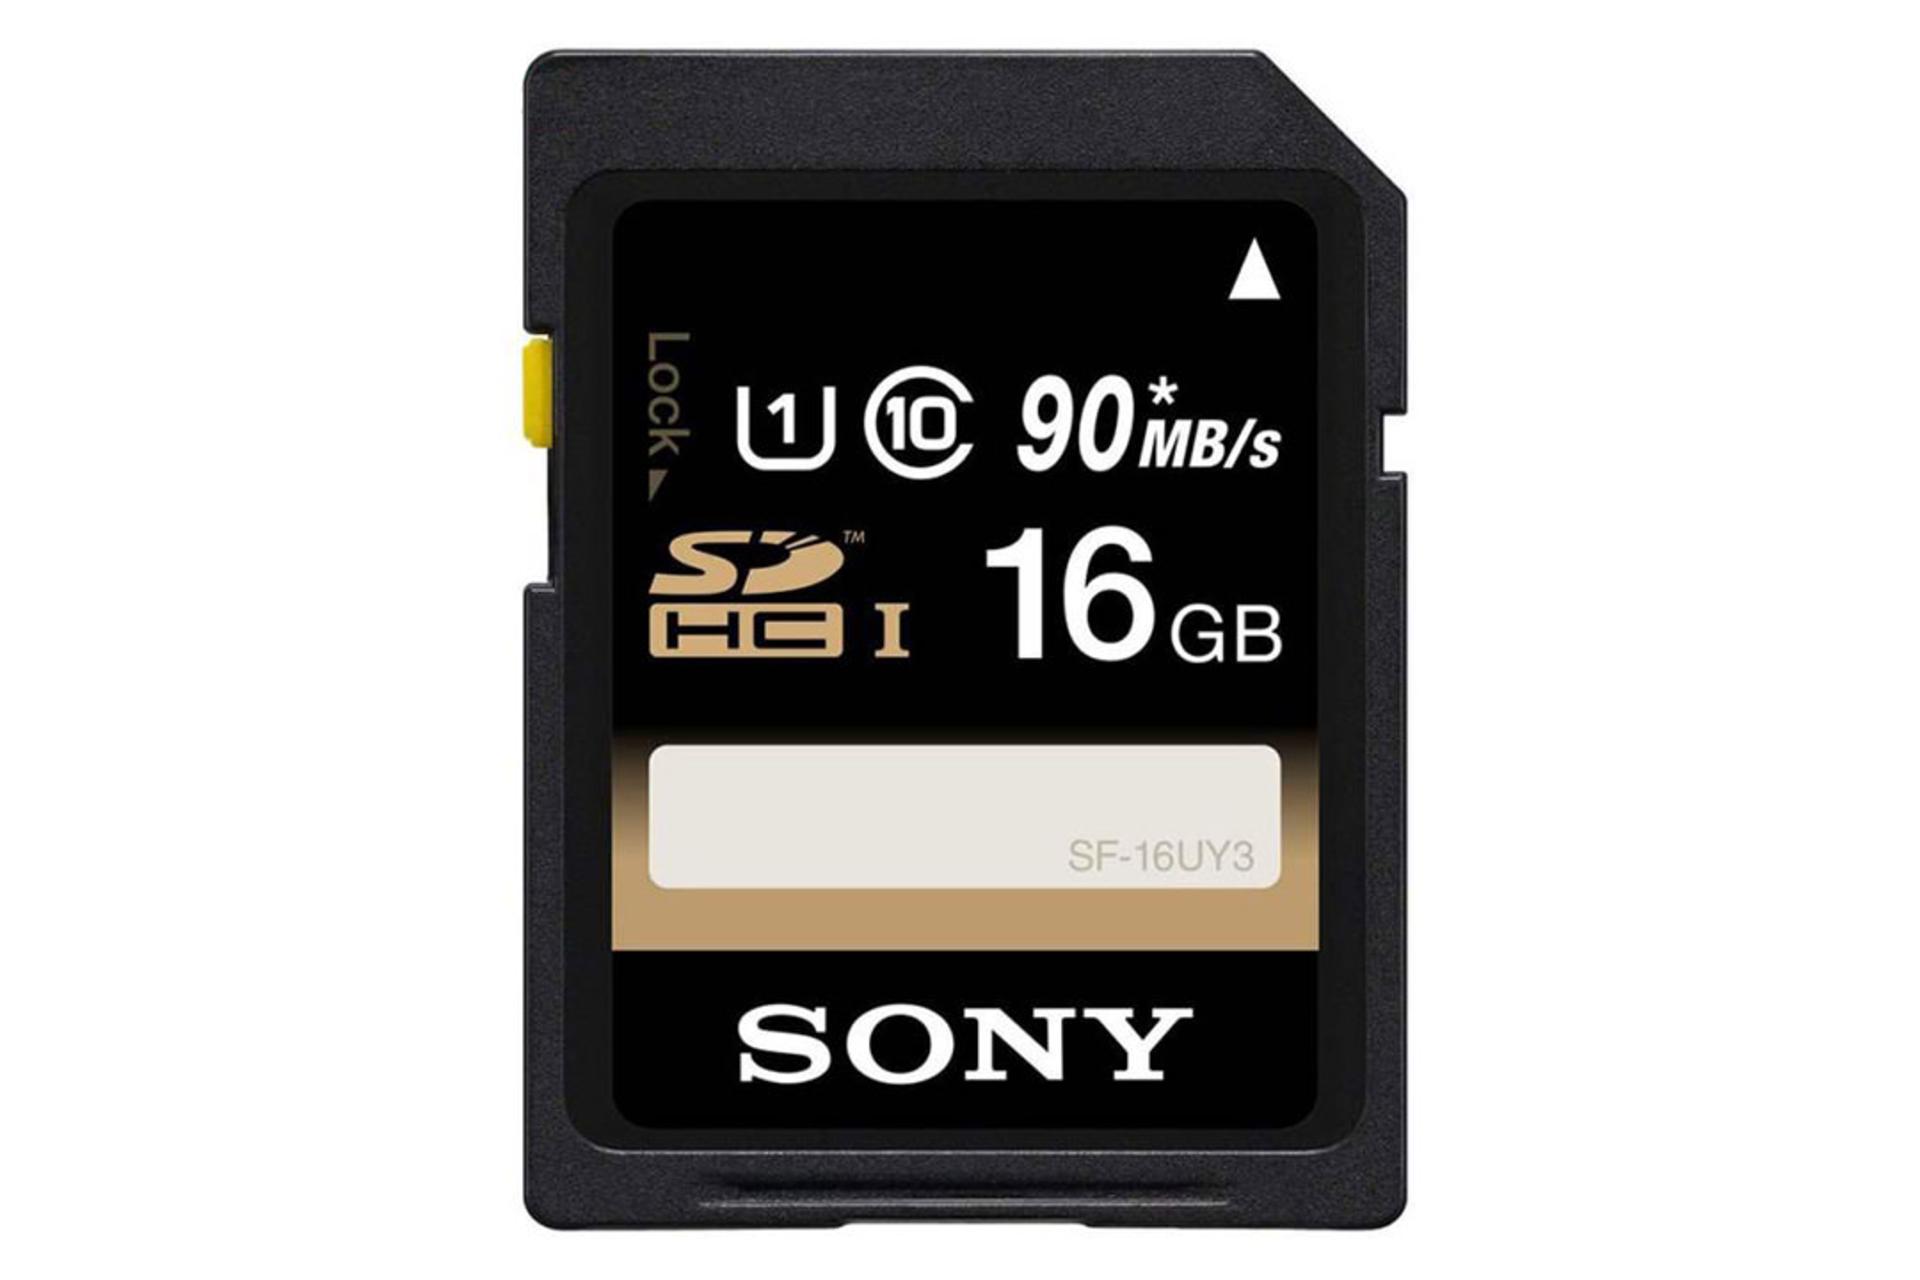 Sony SF-16UY3 SDHC Class 10 UHS-I U1 16GB